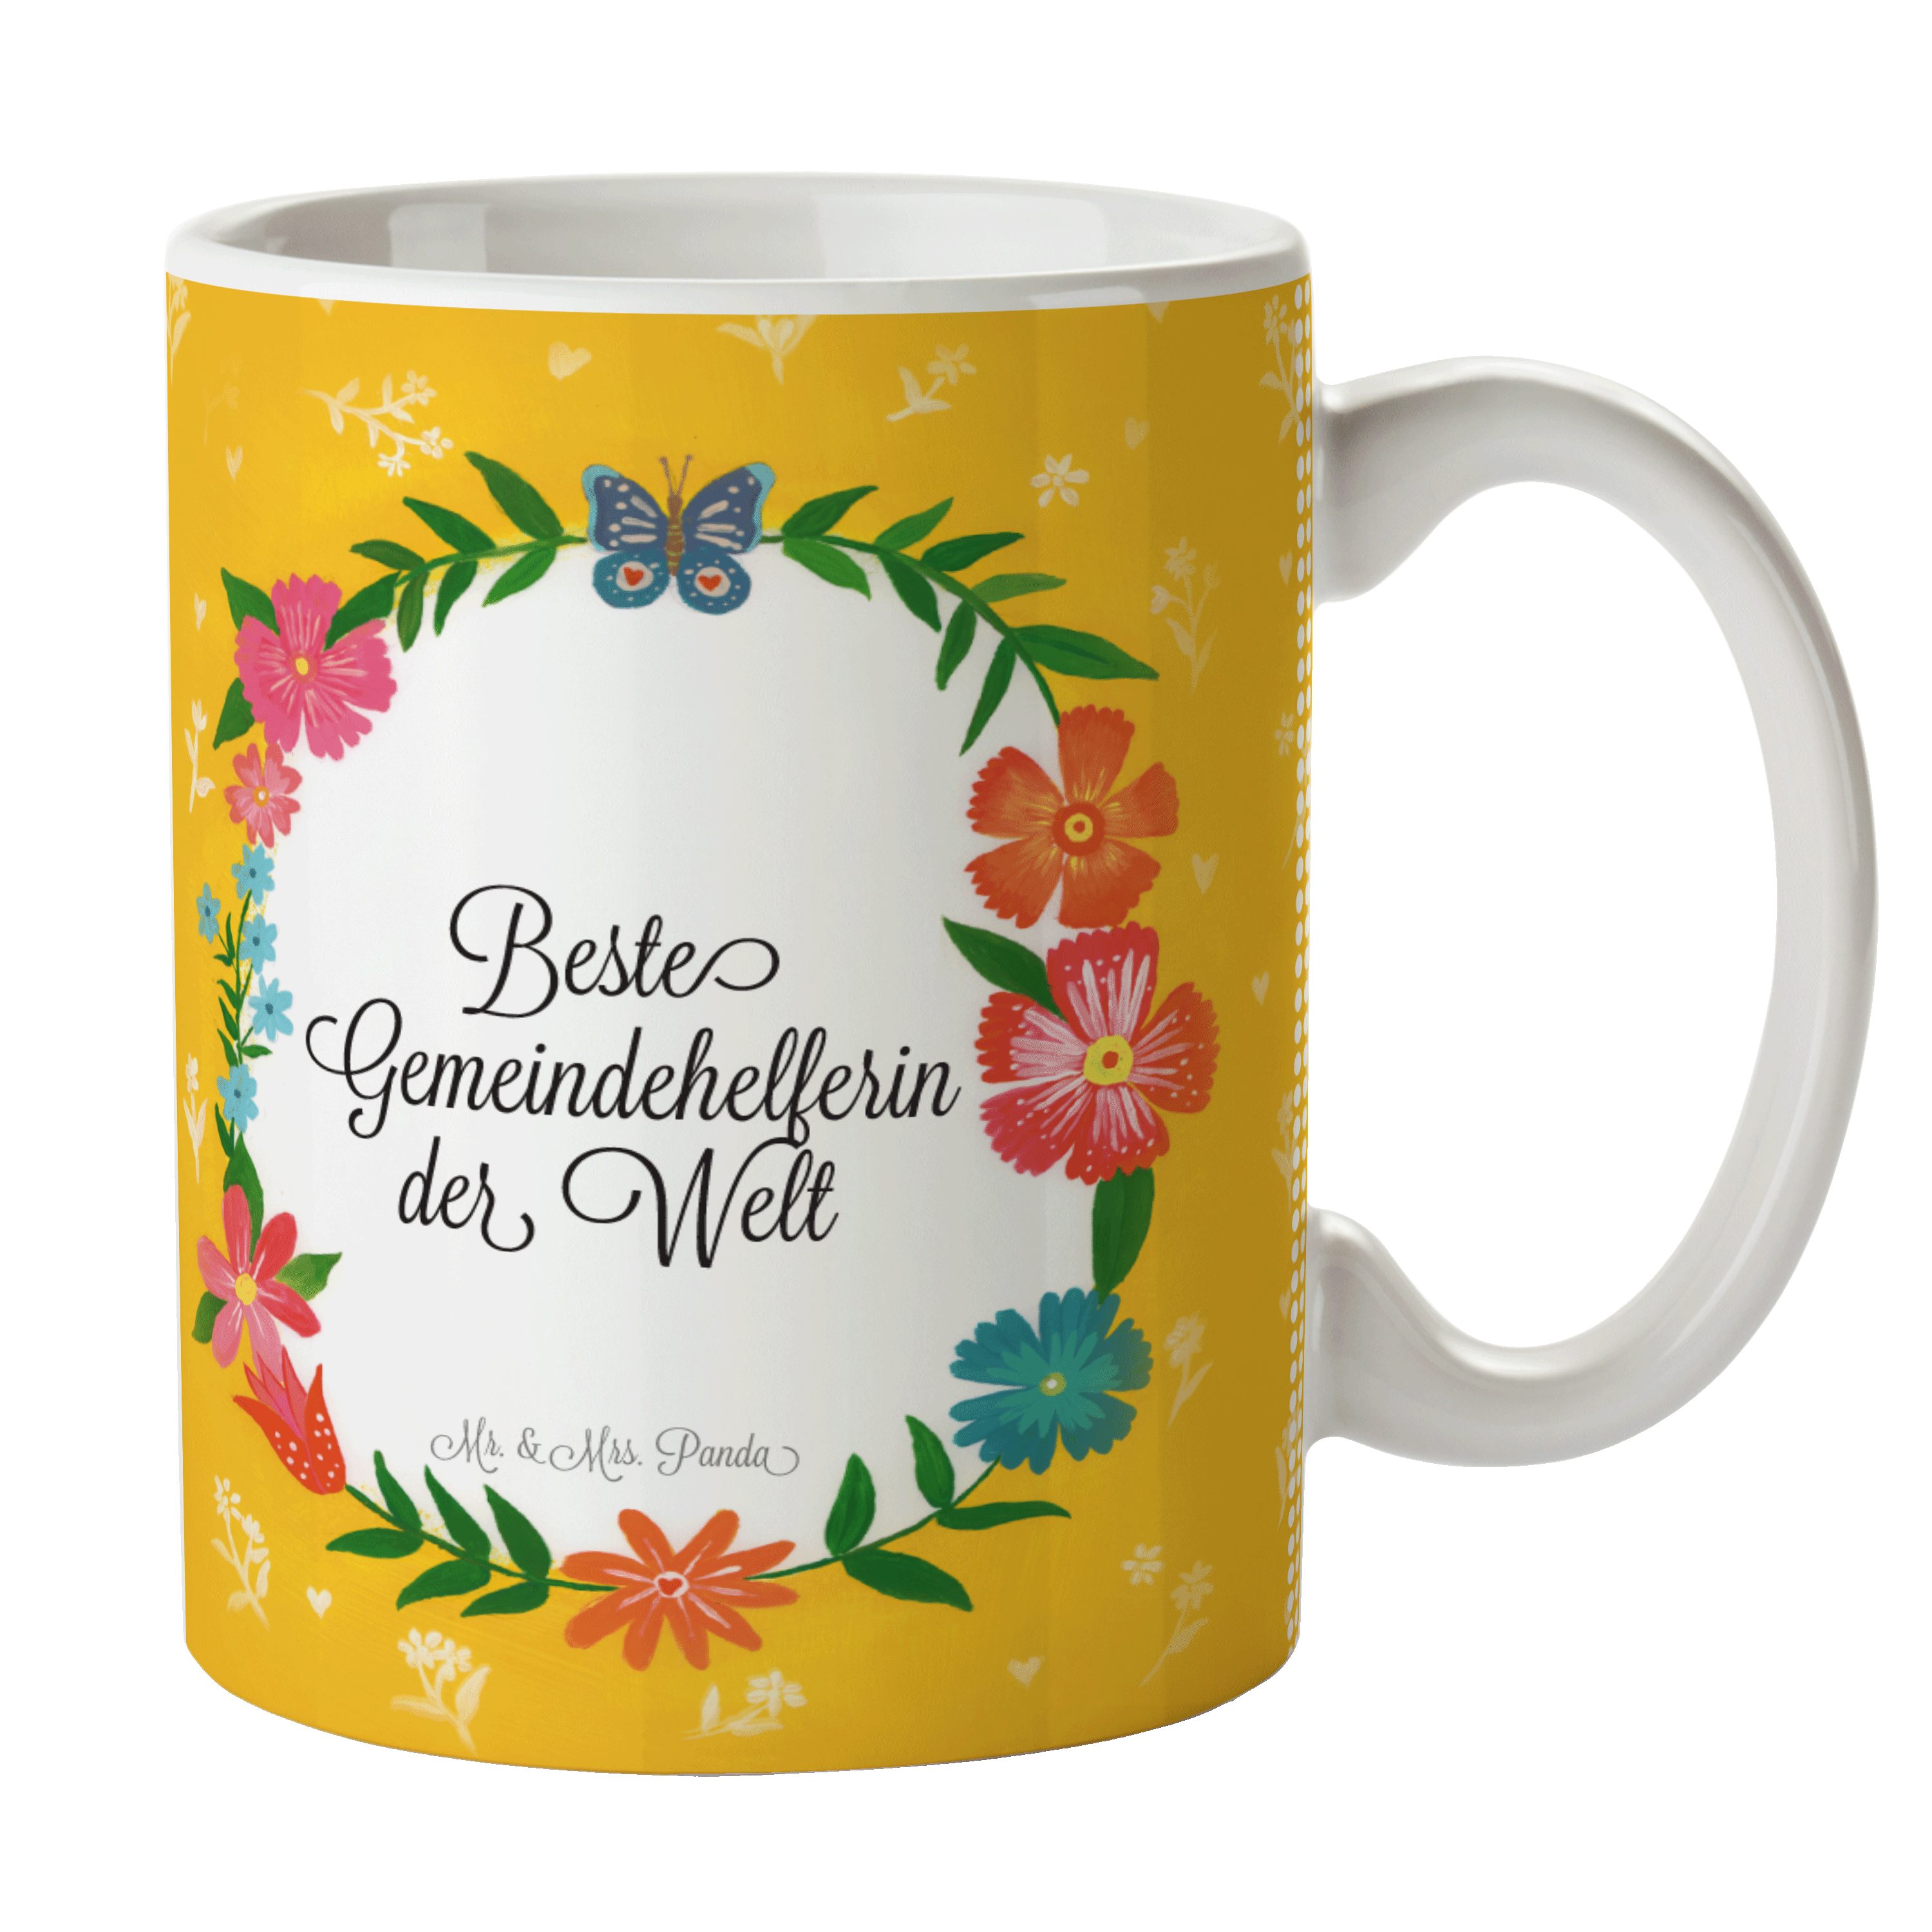 & Beche, Mr. Kaffeebecher, Keramik Tasse Teebecher, Geschenk, - Schenken, Mrs. Panda Gemeindehelferin